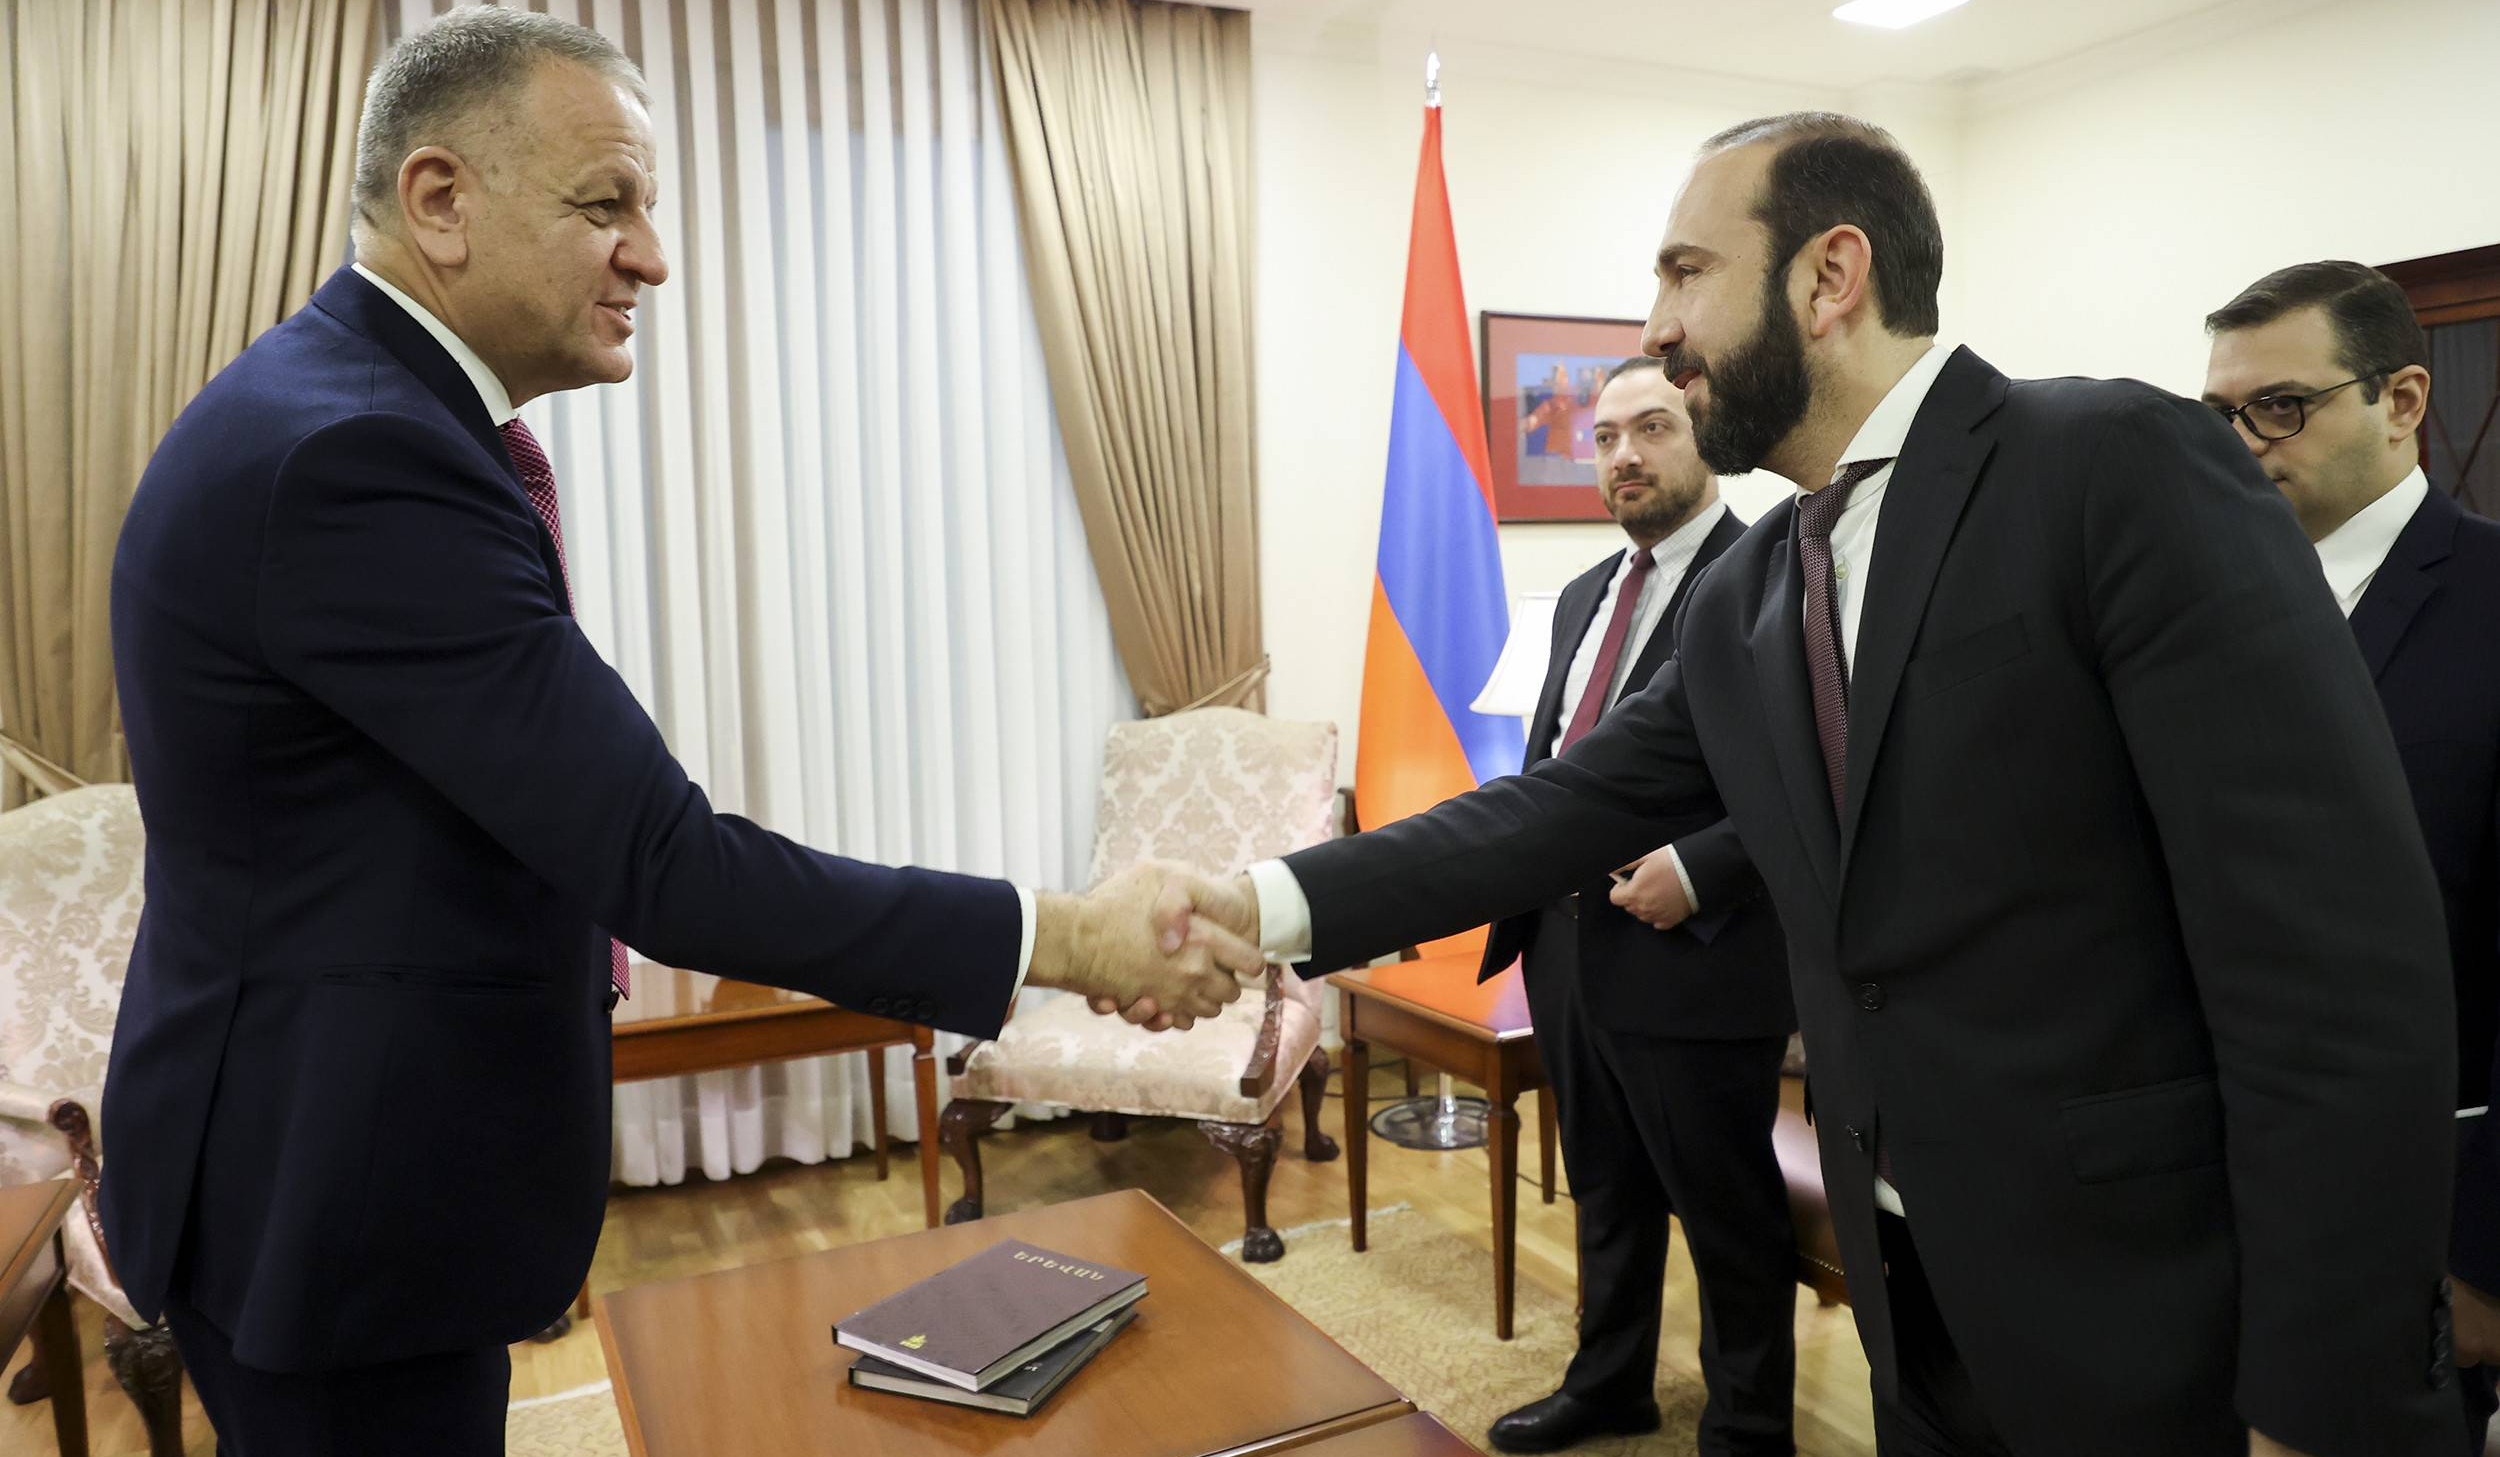 Министр иностранных дел Армении и глава дипмиссии ЕС подвели итоги последних взаимных визитов в Ереван и Брюссель